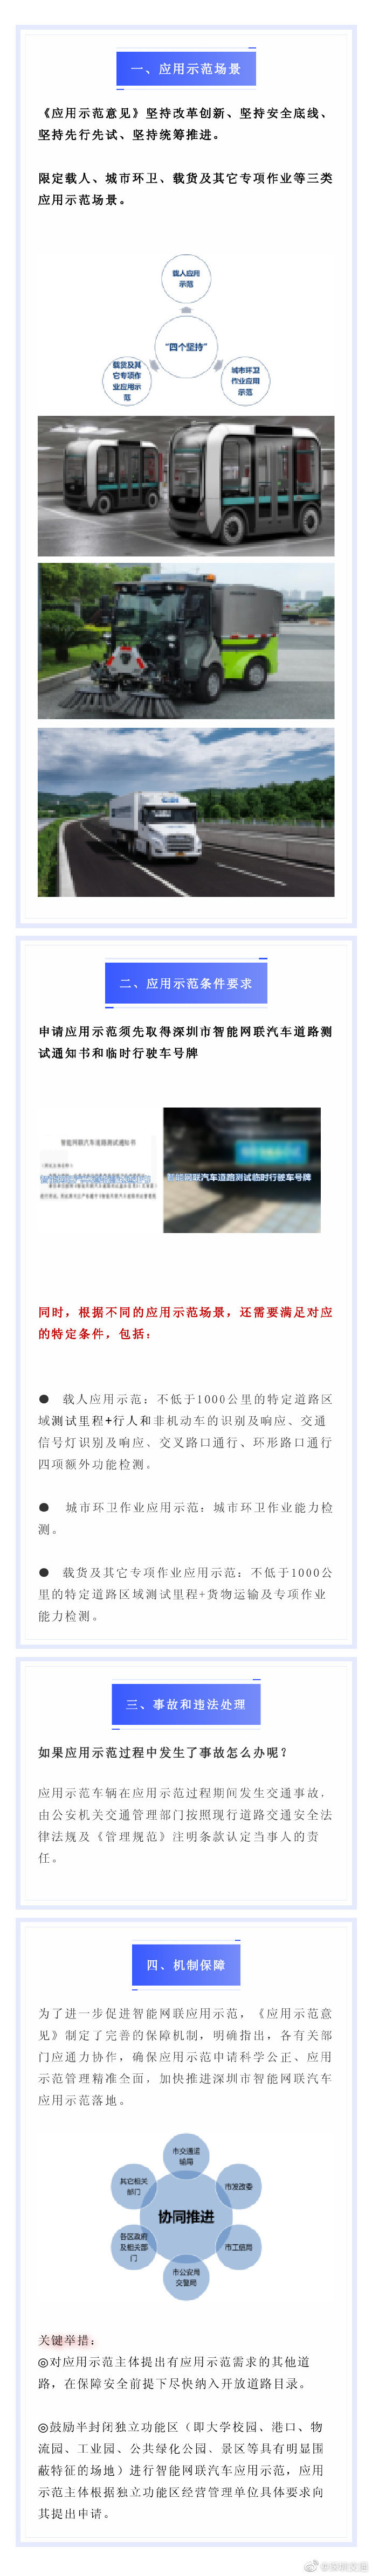 深圳关于推进智能网联汽车应用示范意见近期发布